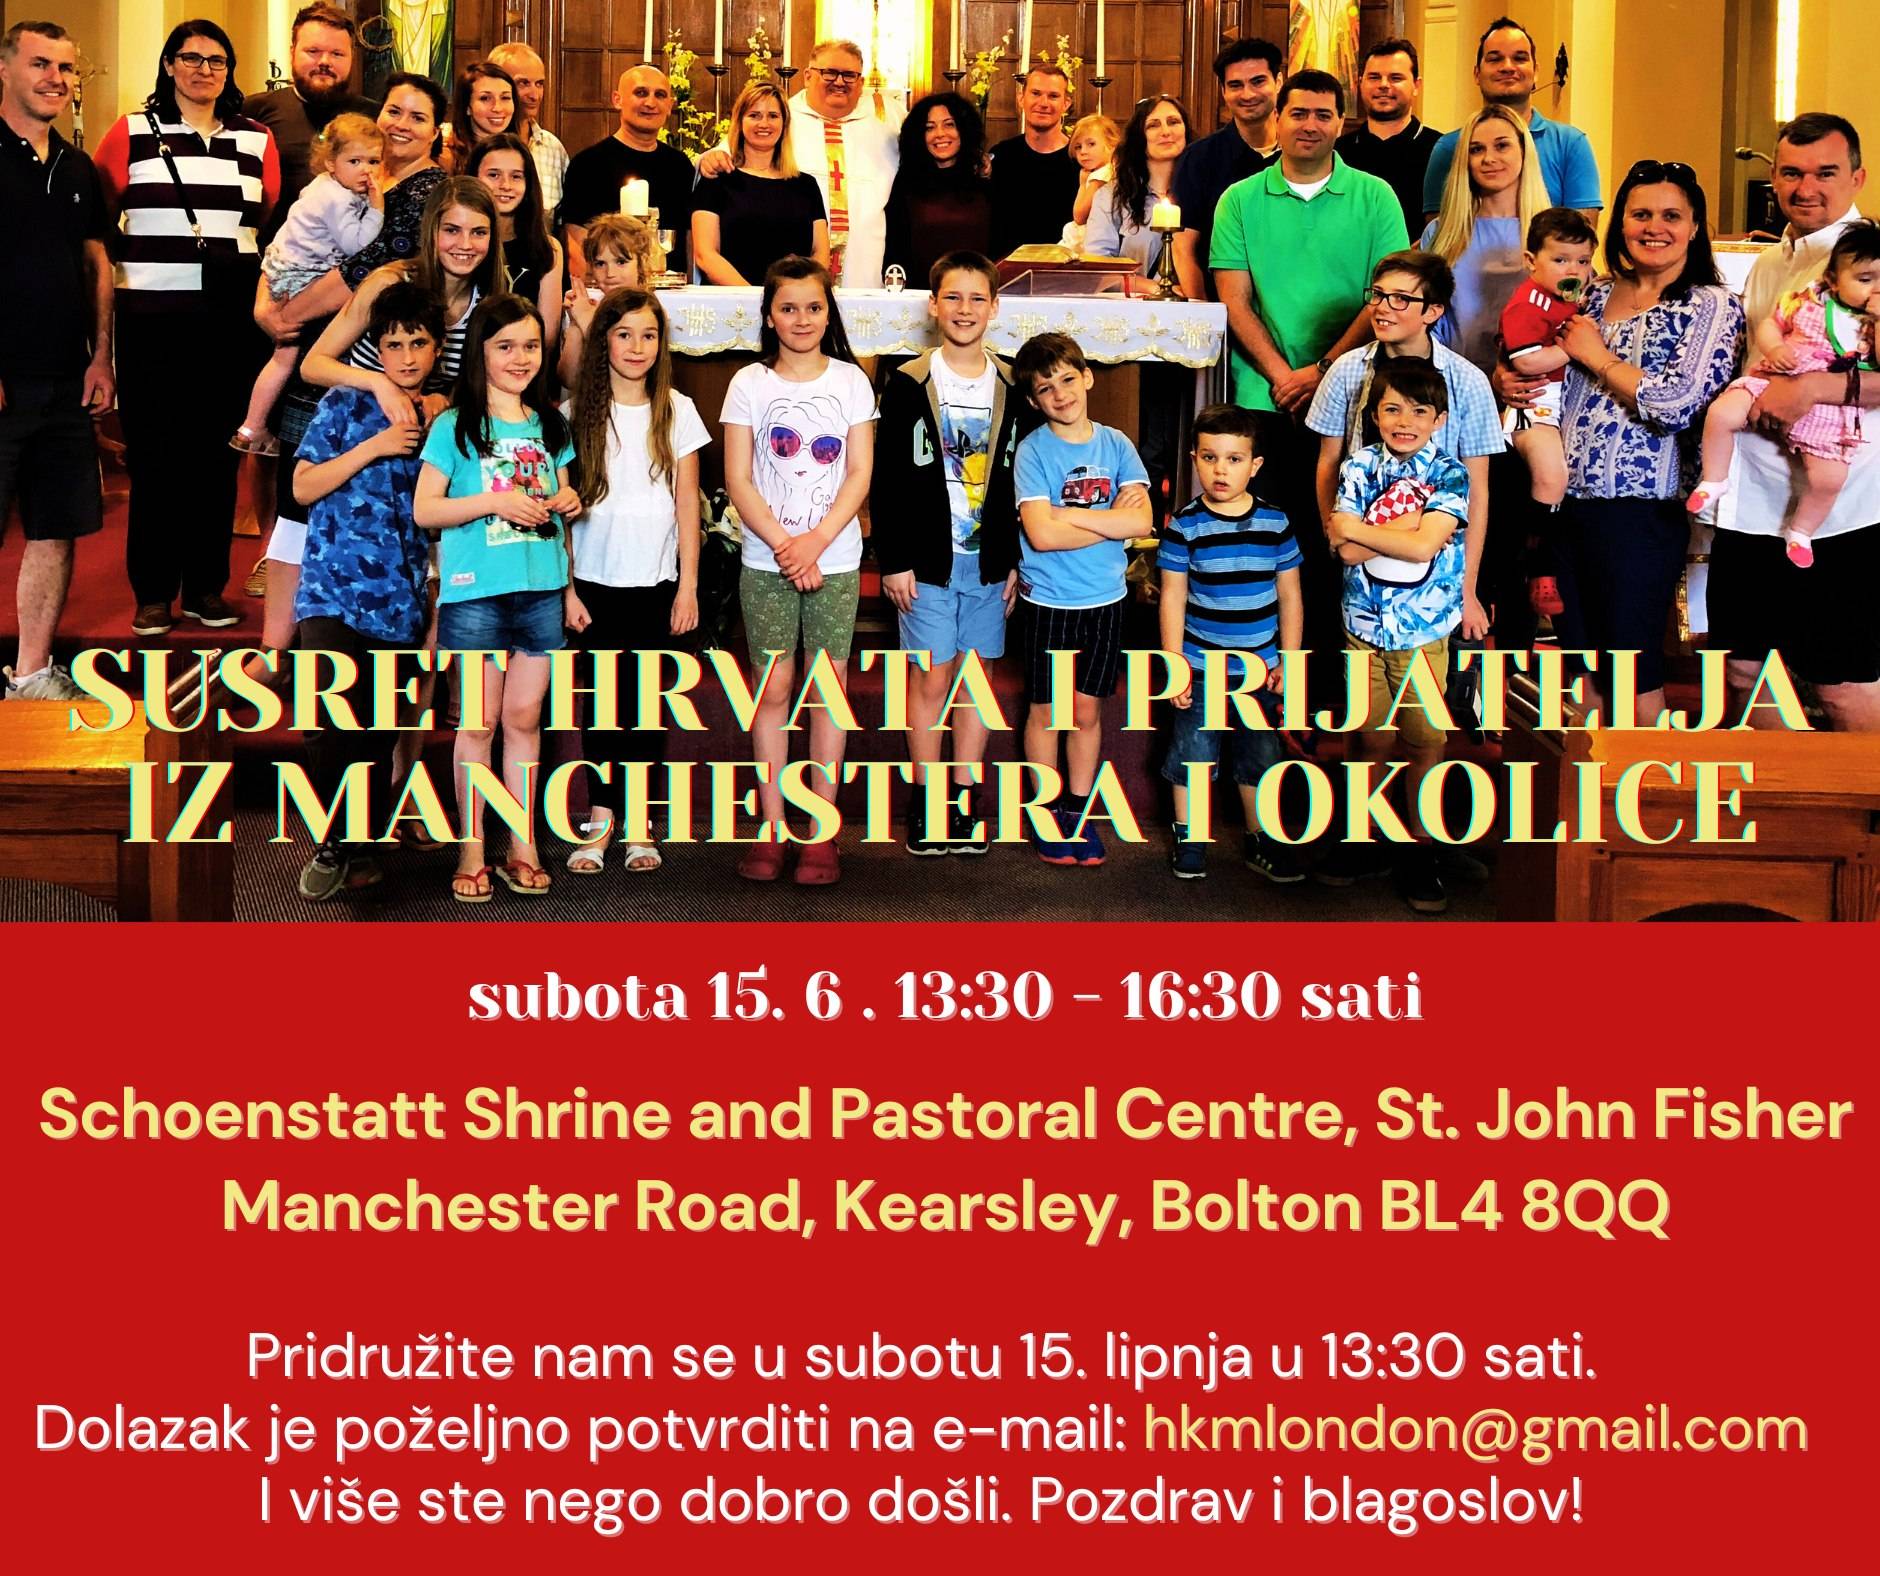 Hrvatska katolička misija London najavljuje Susret Hrvata i prijatelja iz Manchestera i okolice